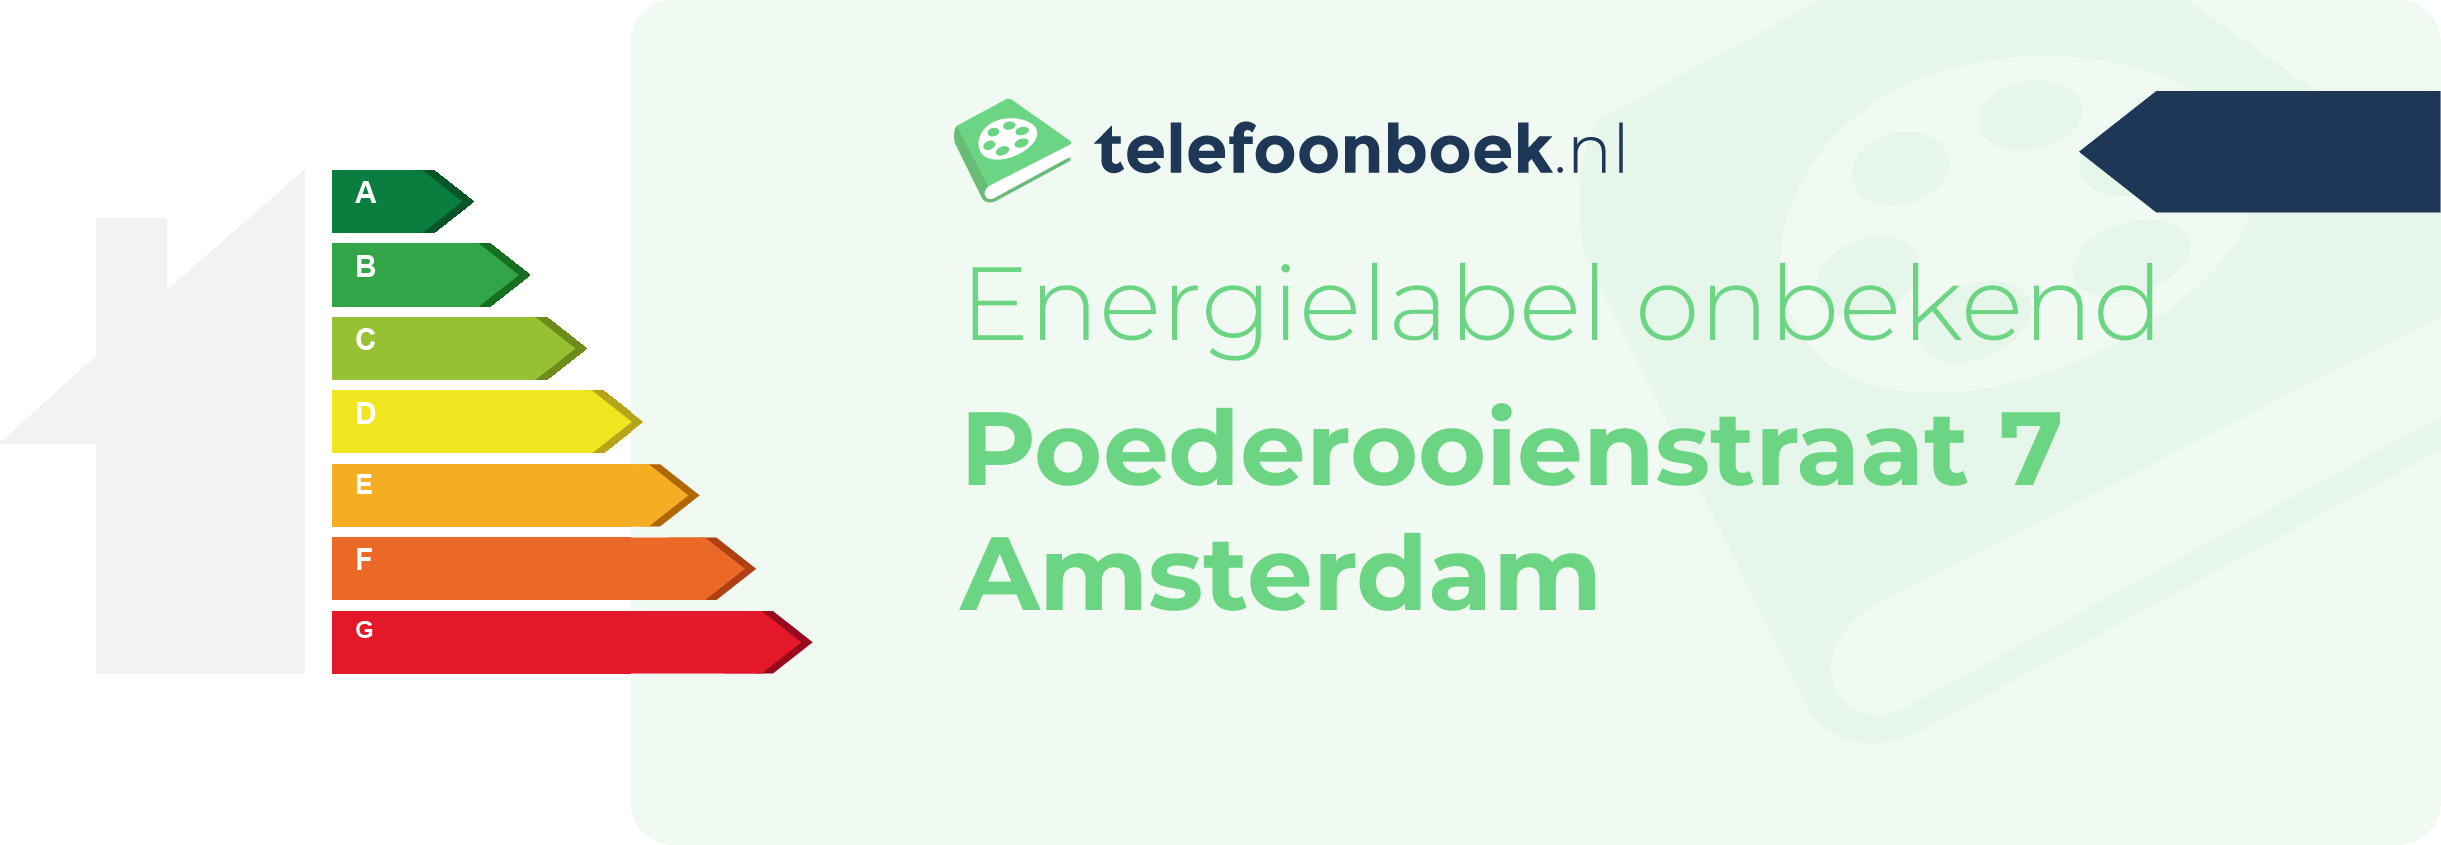 Energielabel Poederooienstraat 7 Amsterdam